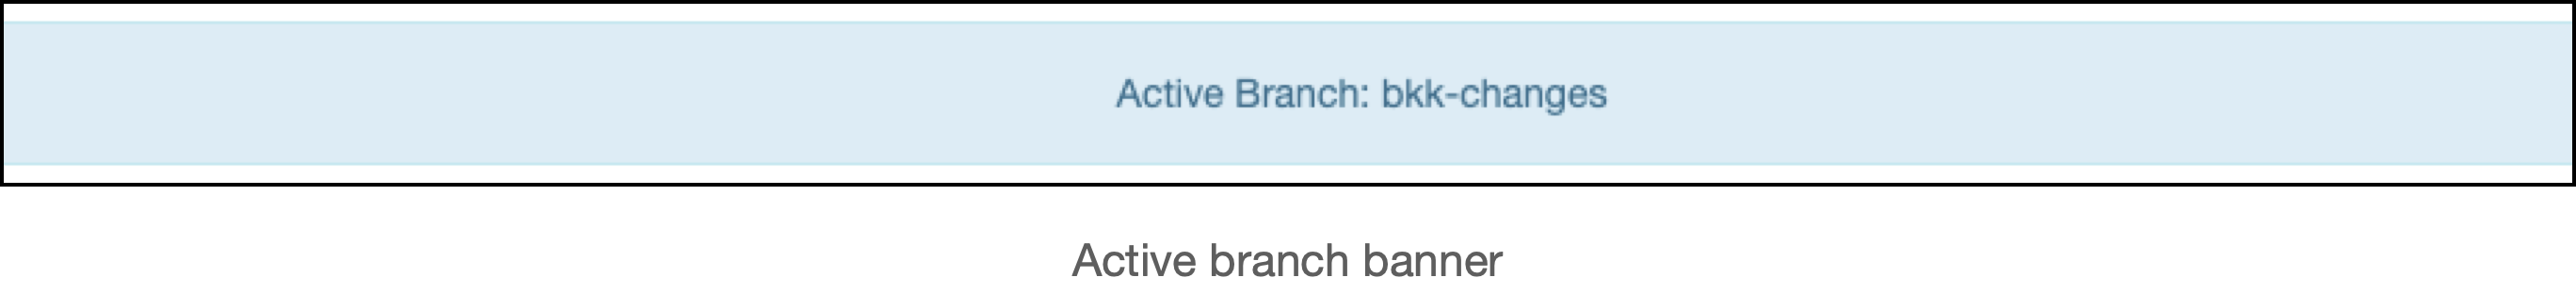 active branch banner